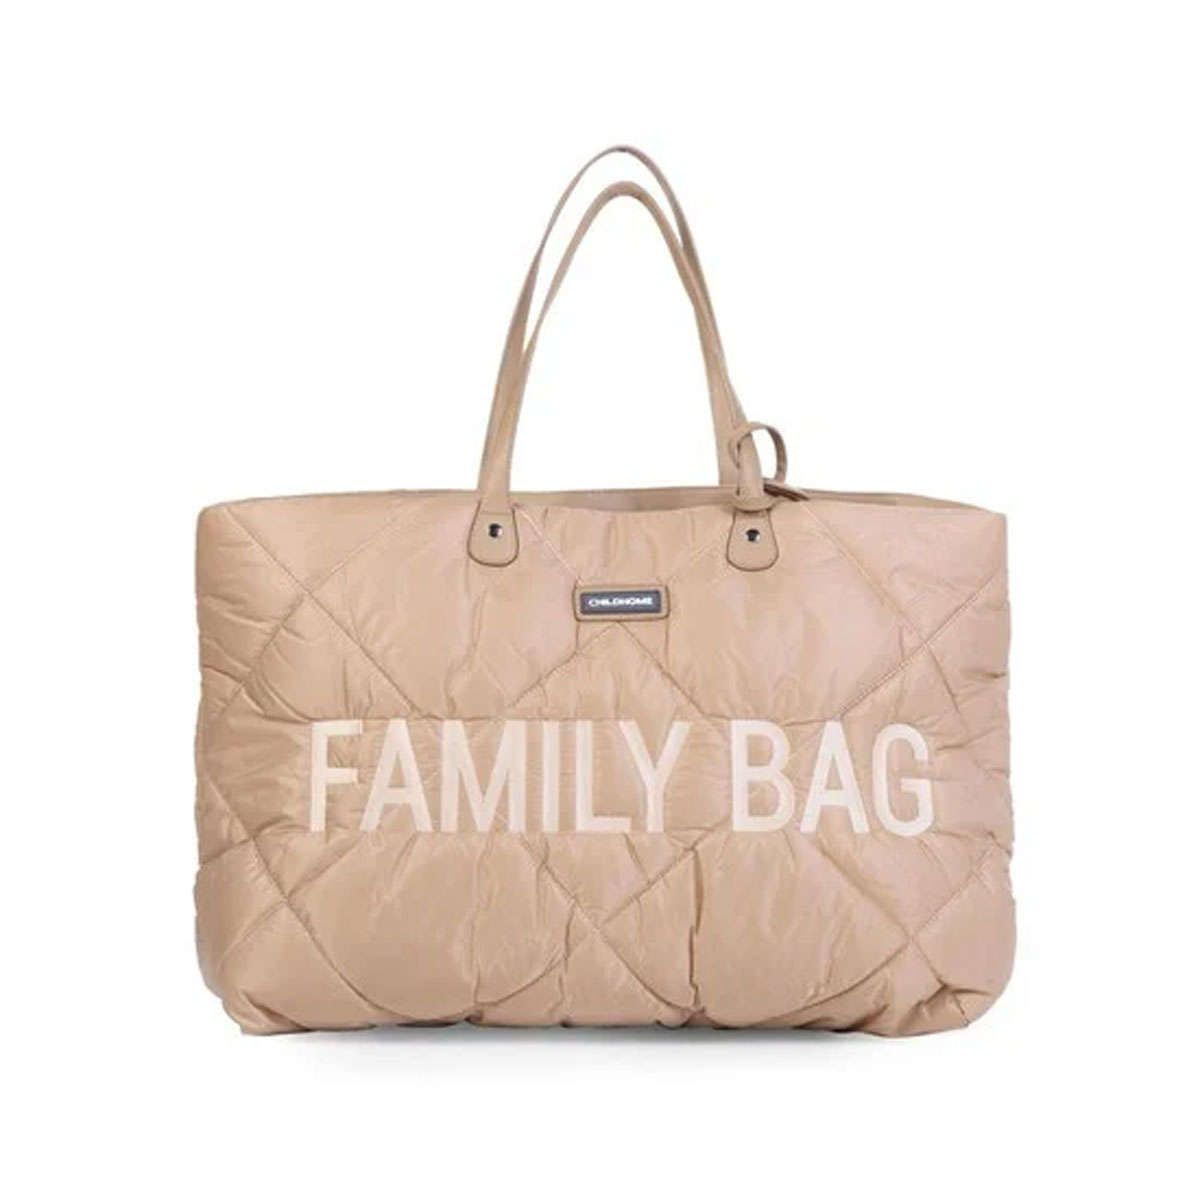 Τσάντα Family bag quilted Puffered beige Childhome